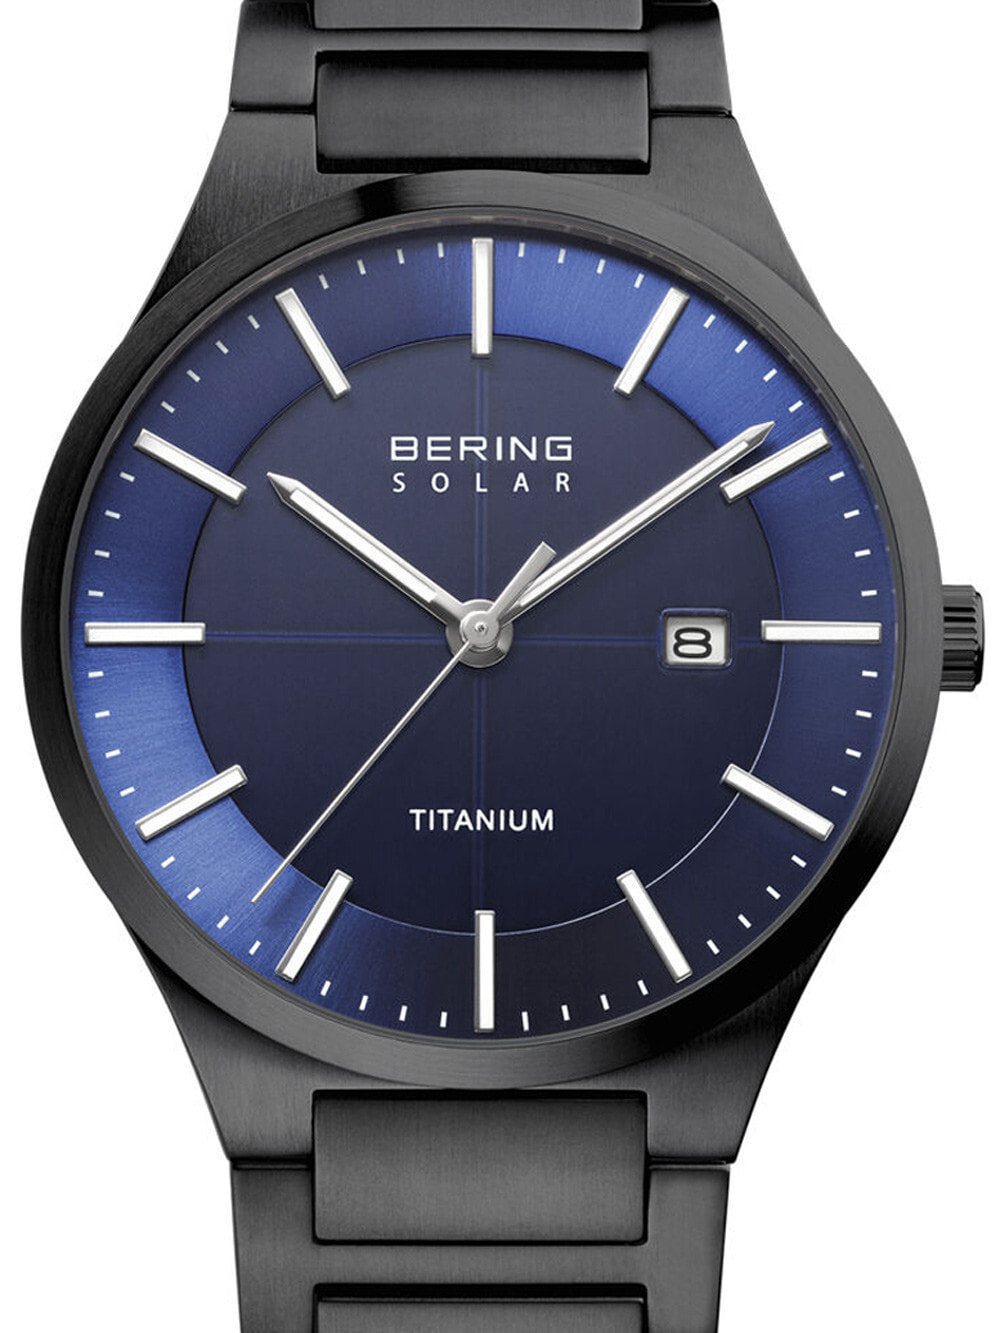 Мужские наручные часы с синим браслетом Bering 15239-727 solar mens 39mm 10ATM